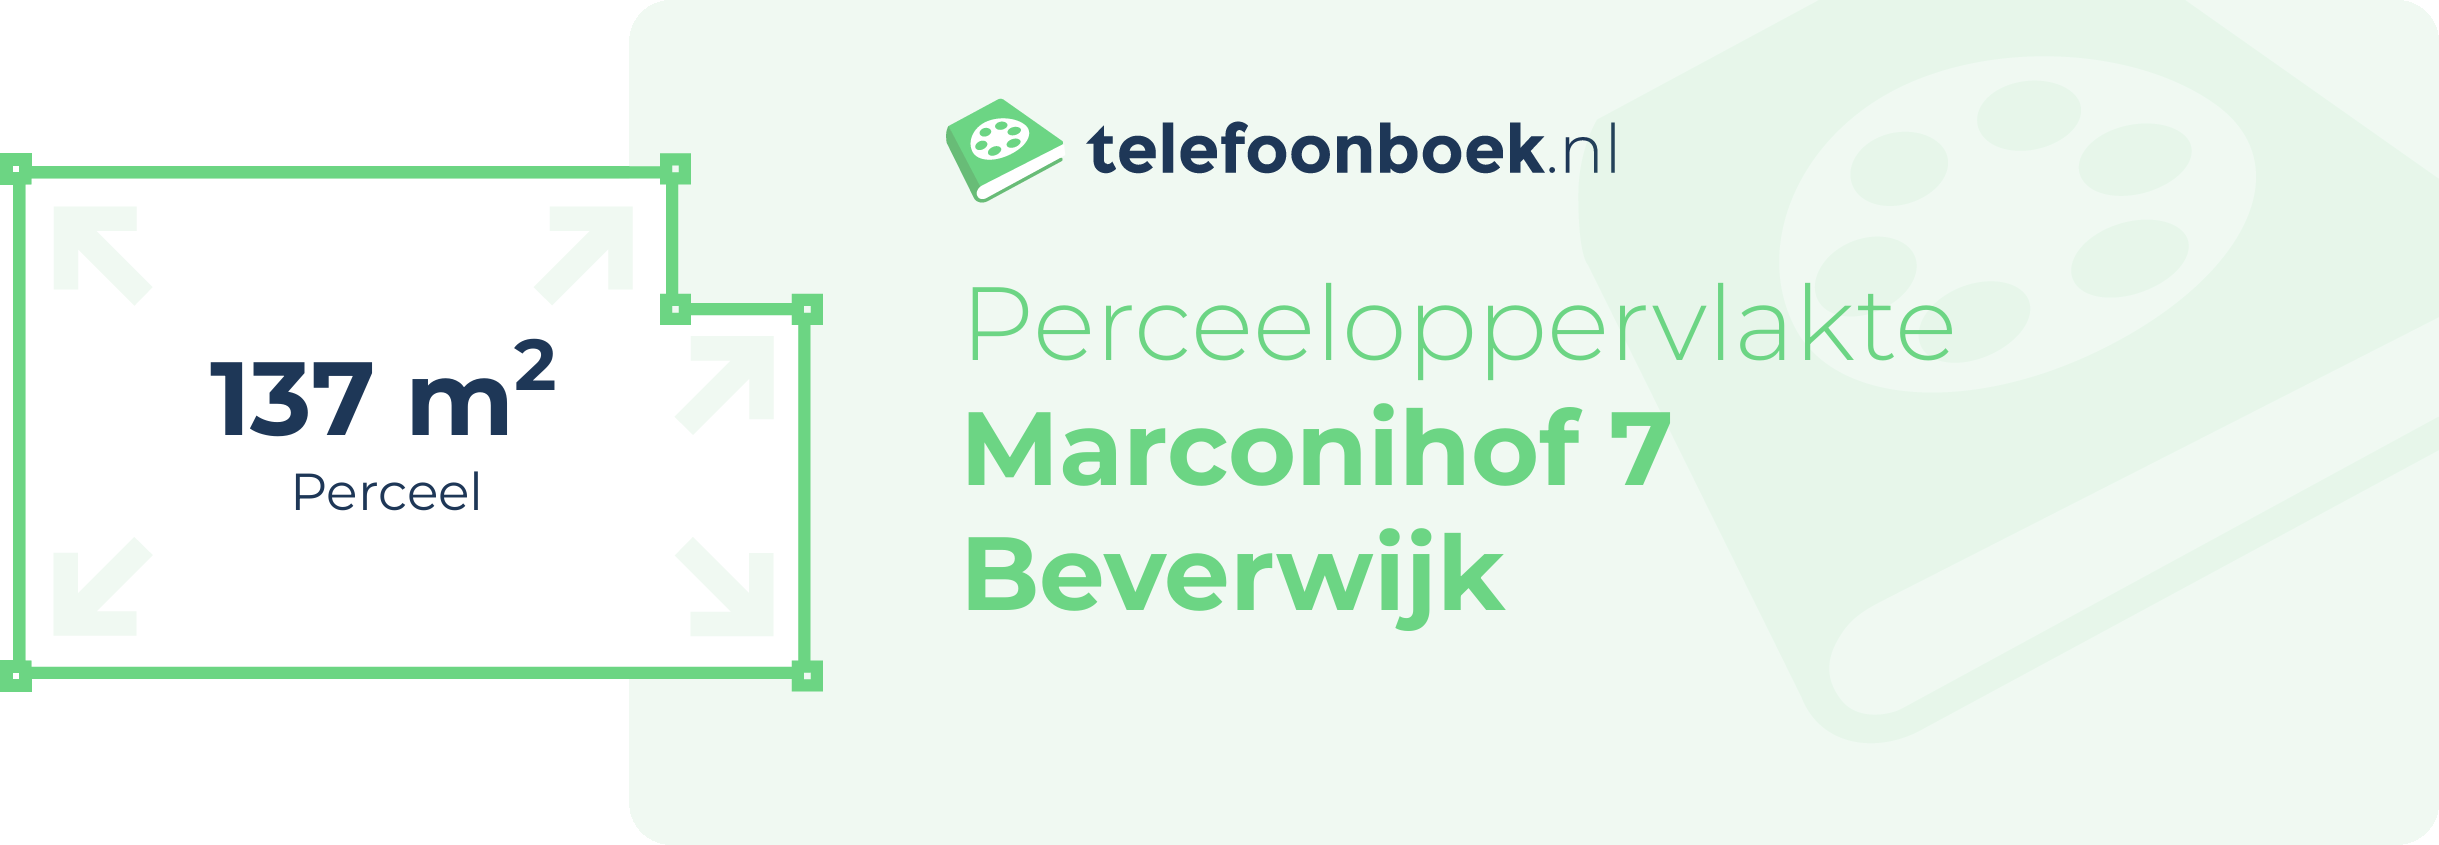 Perceeloppervlakte Marconihof 7 Beverwijk